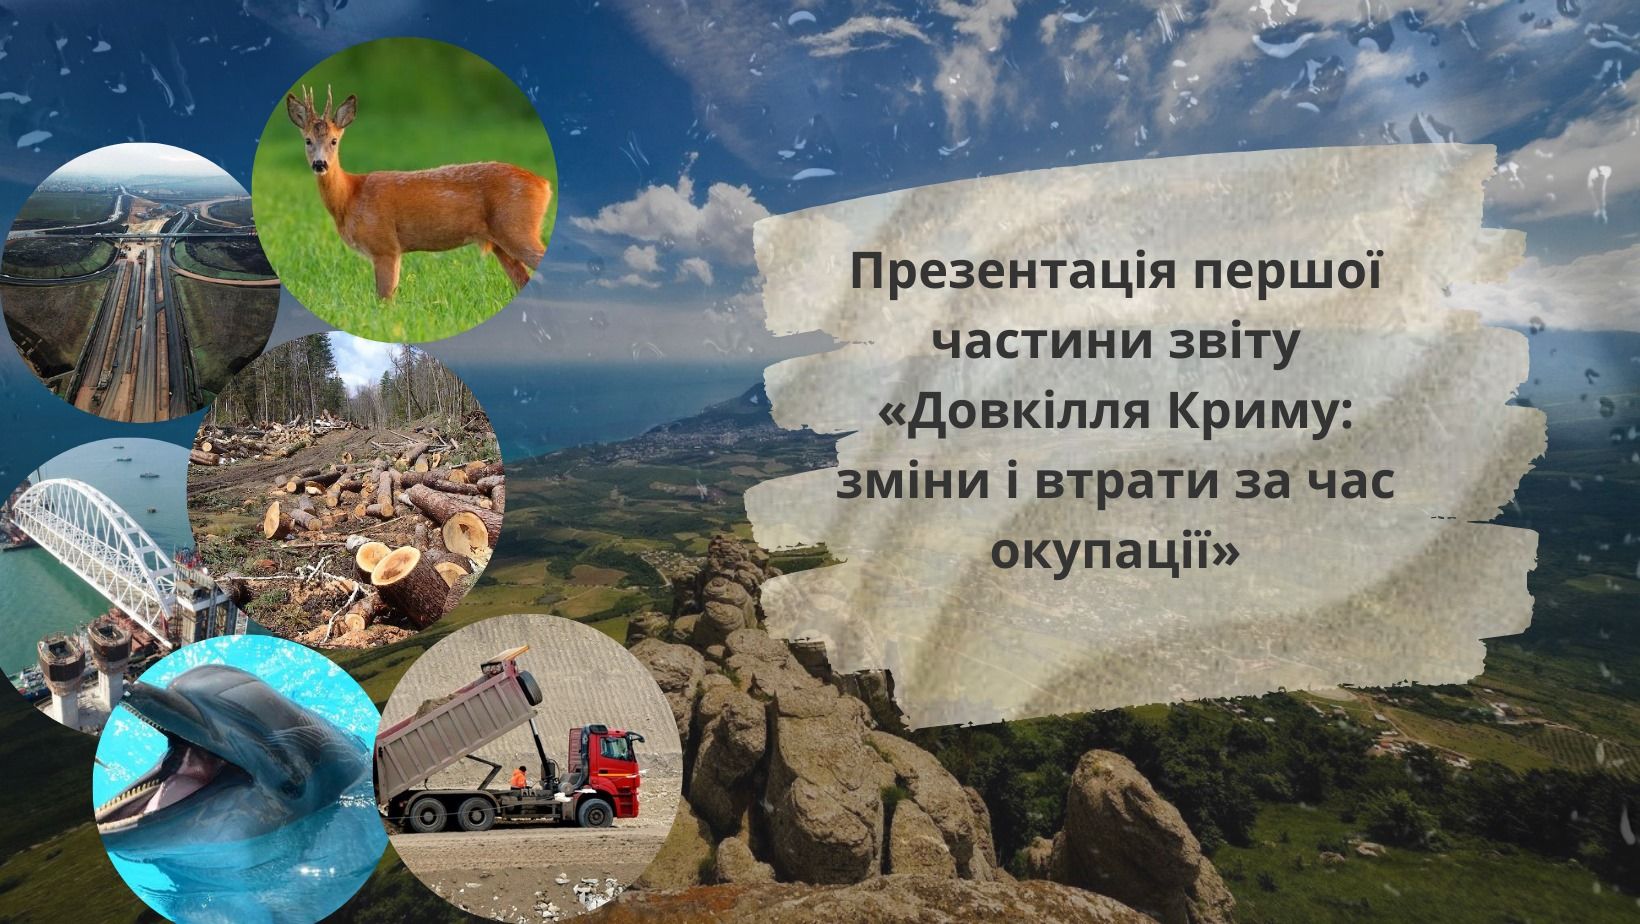 27 травня — онлайн-презентація дослідження «Довкілля Криму: зміни і втрати за час окупації. Частина 1. Знищення дикої природи»